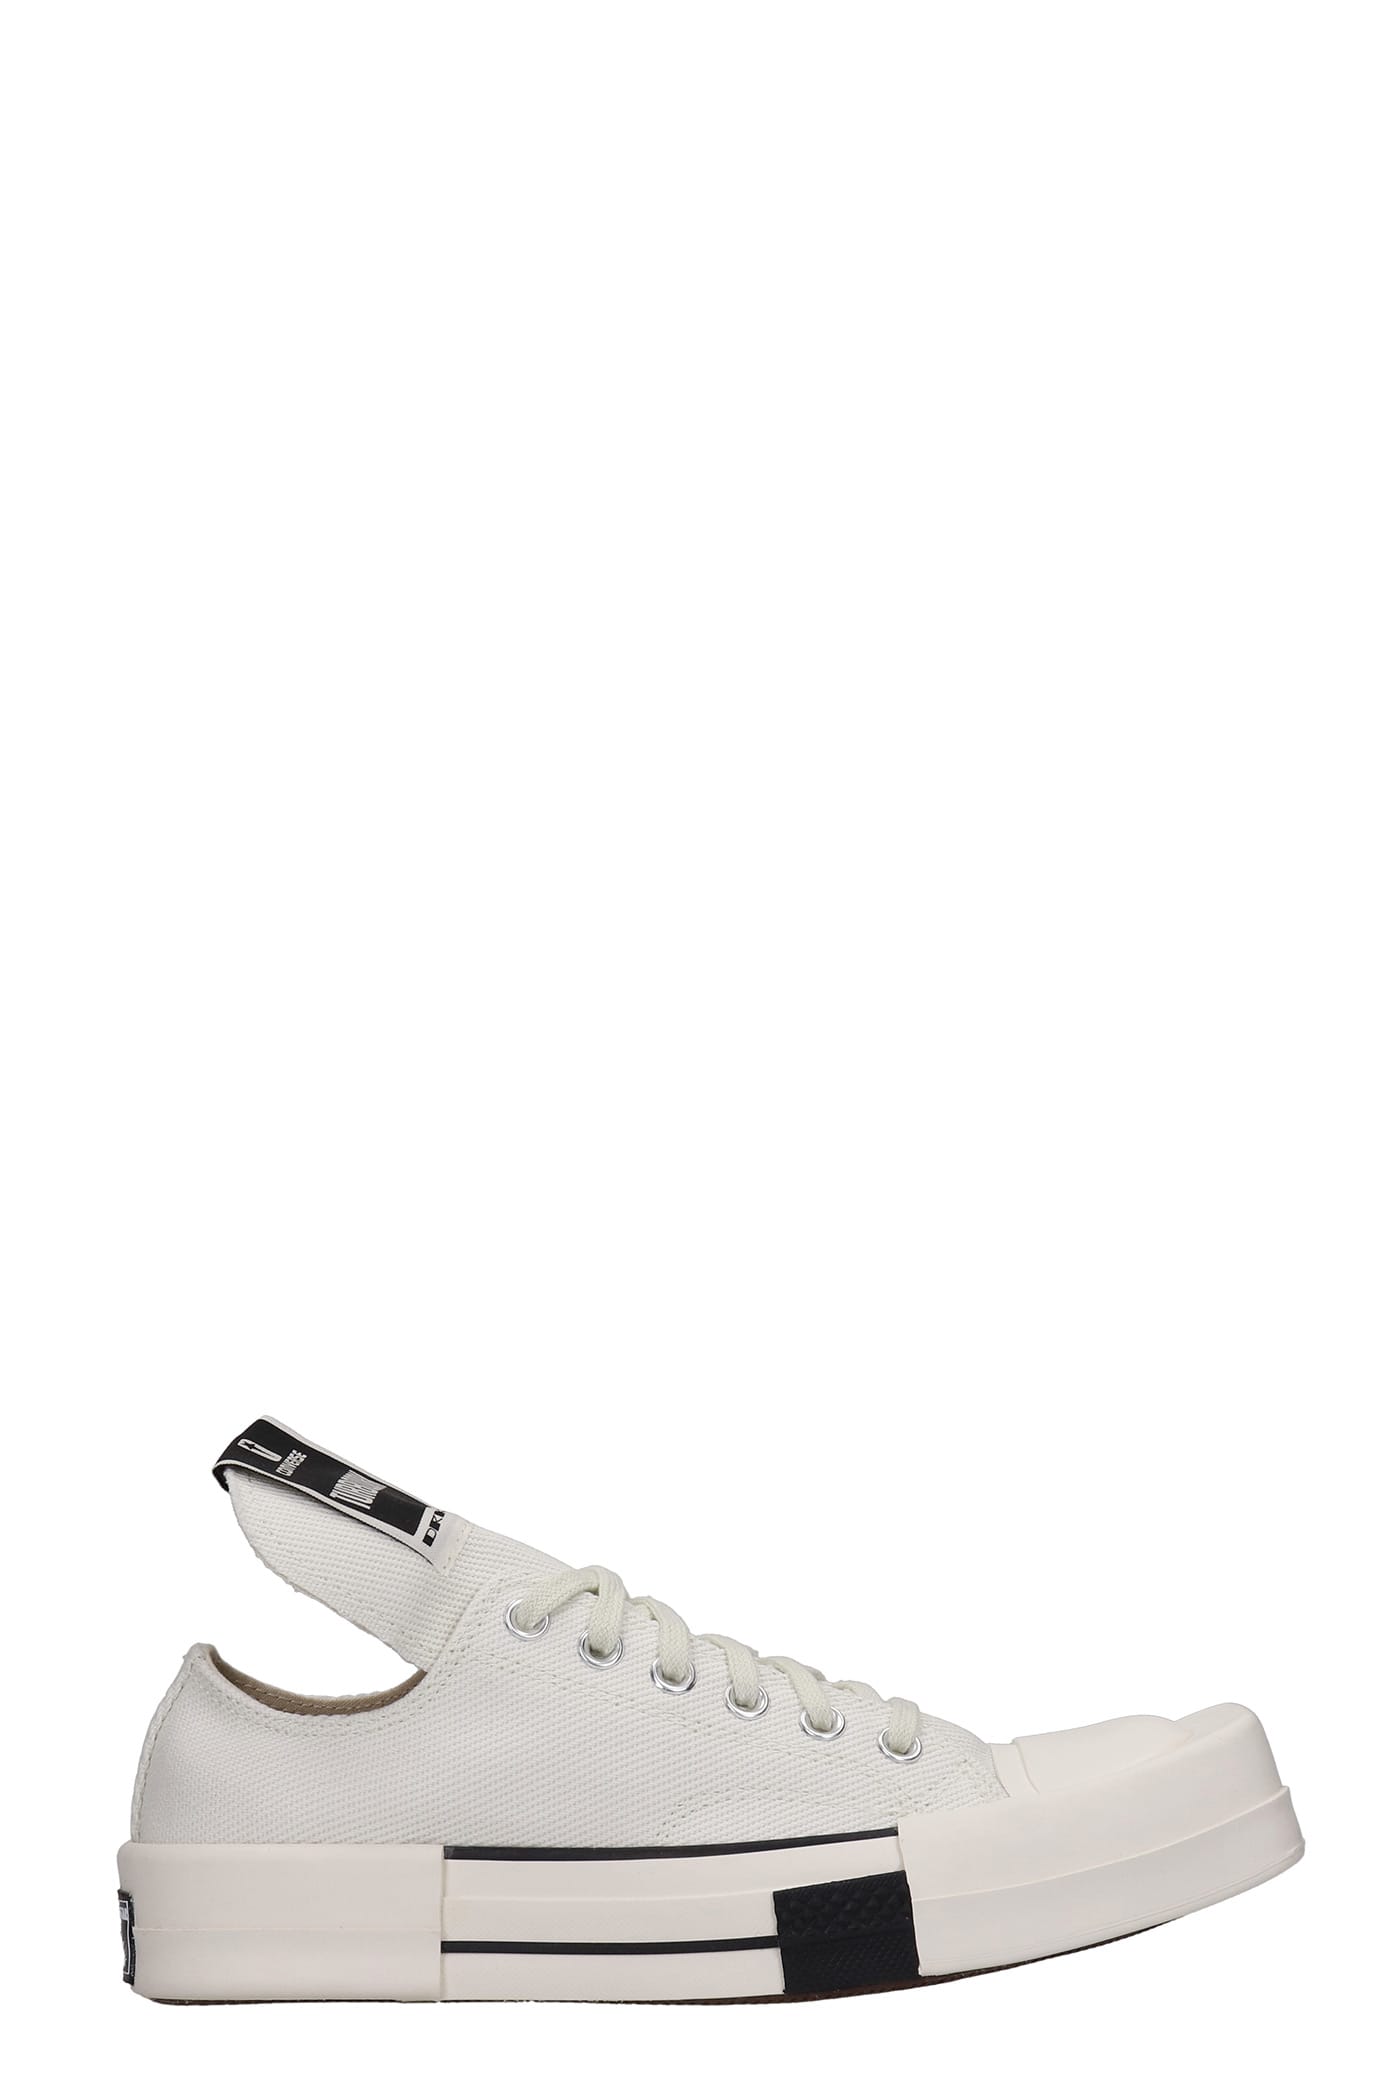 DRKSHDW Turbodrk Low Sneakers In White Canvas